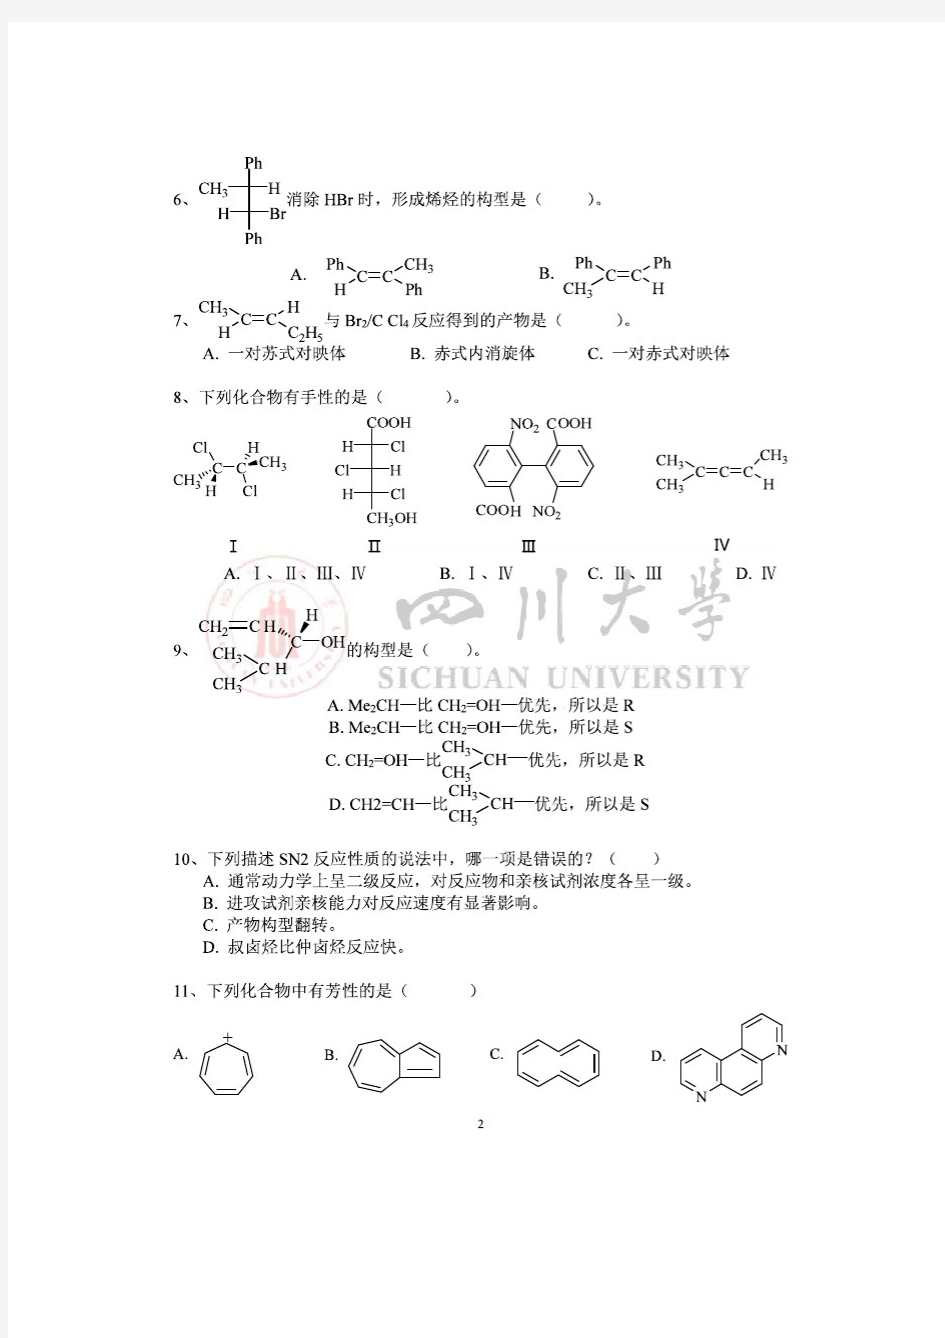 【四川大学考研资料】有机化学习题三【有答案】